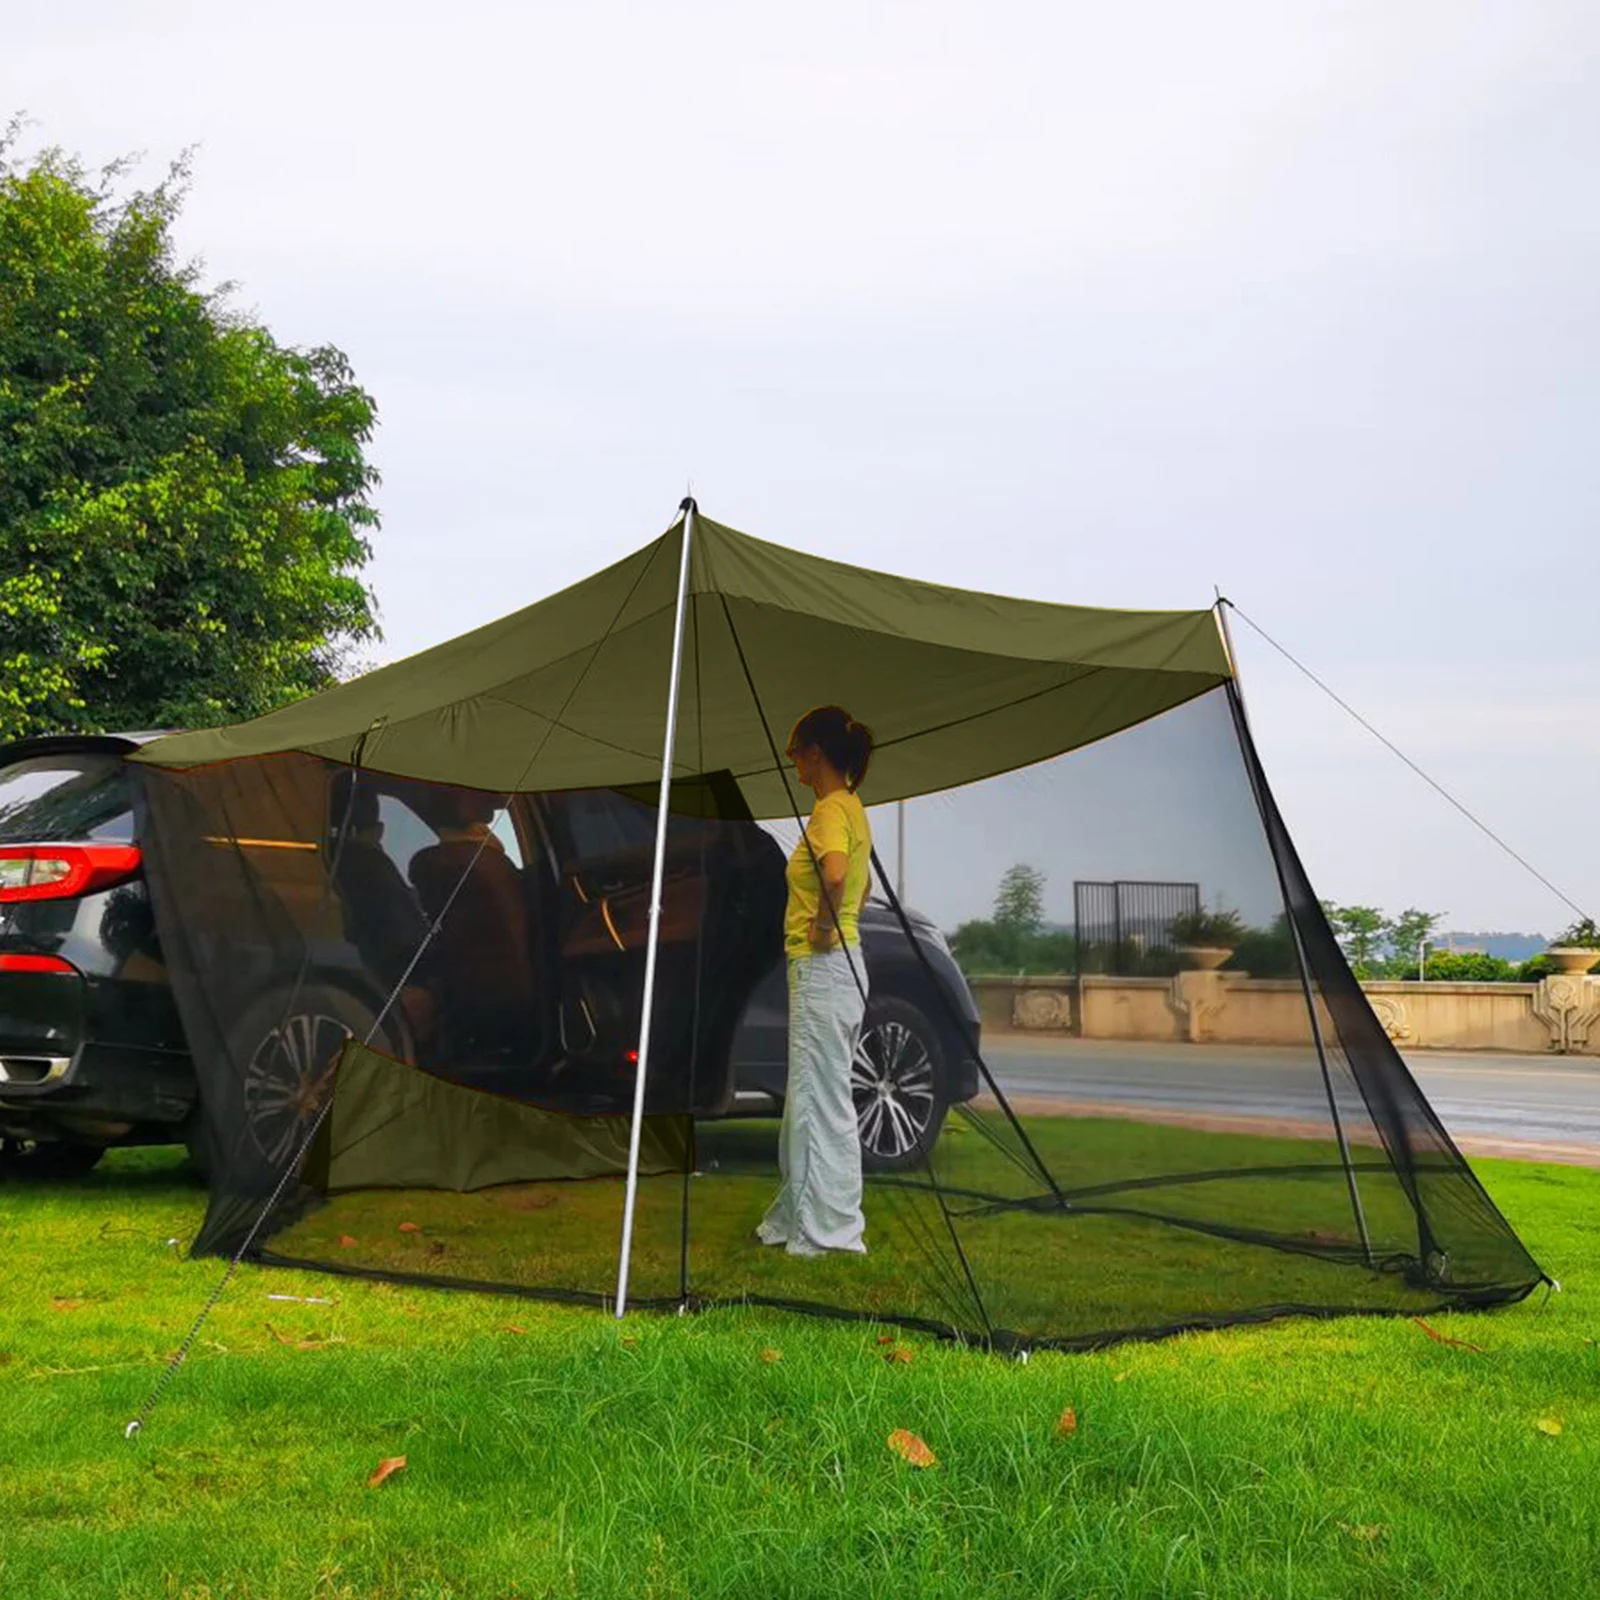 Camping with extend. Палатка на заднюю дверь автомобиля. Как удлинить палатку. Luxury 6 cardir палатка купить.